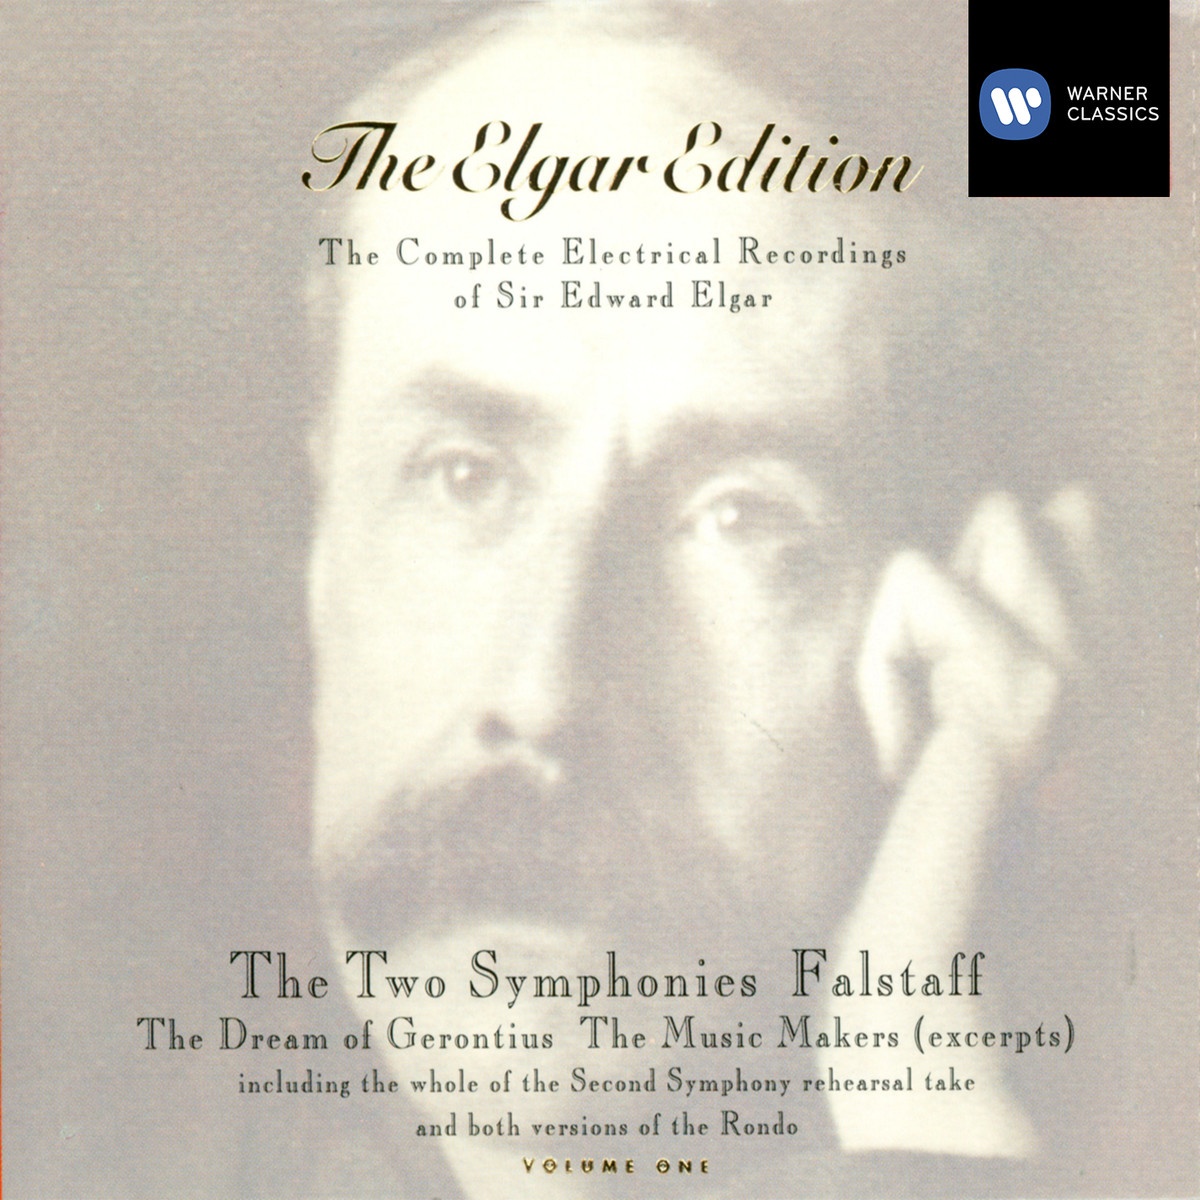 Civic Fanfare & The National Anthem (arr. Elgar) (1992 Digital Remaster)